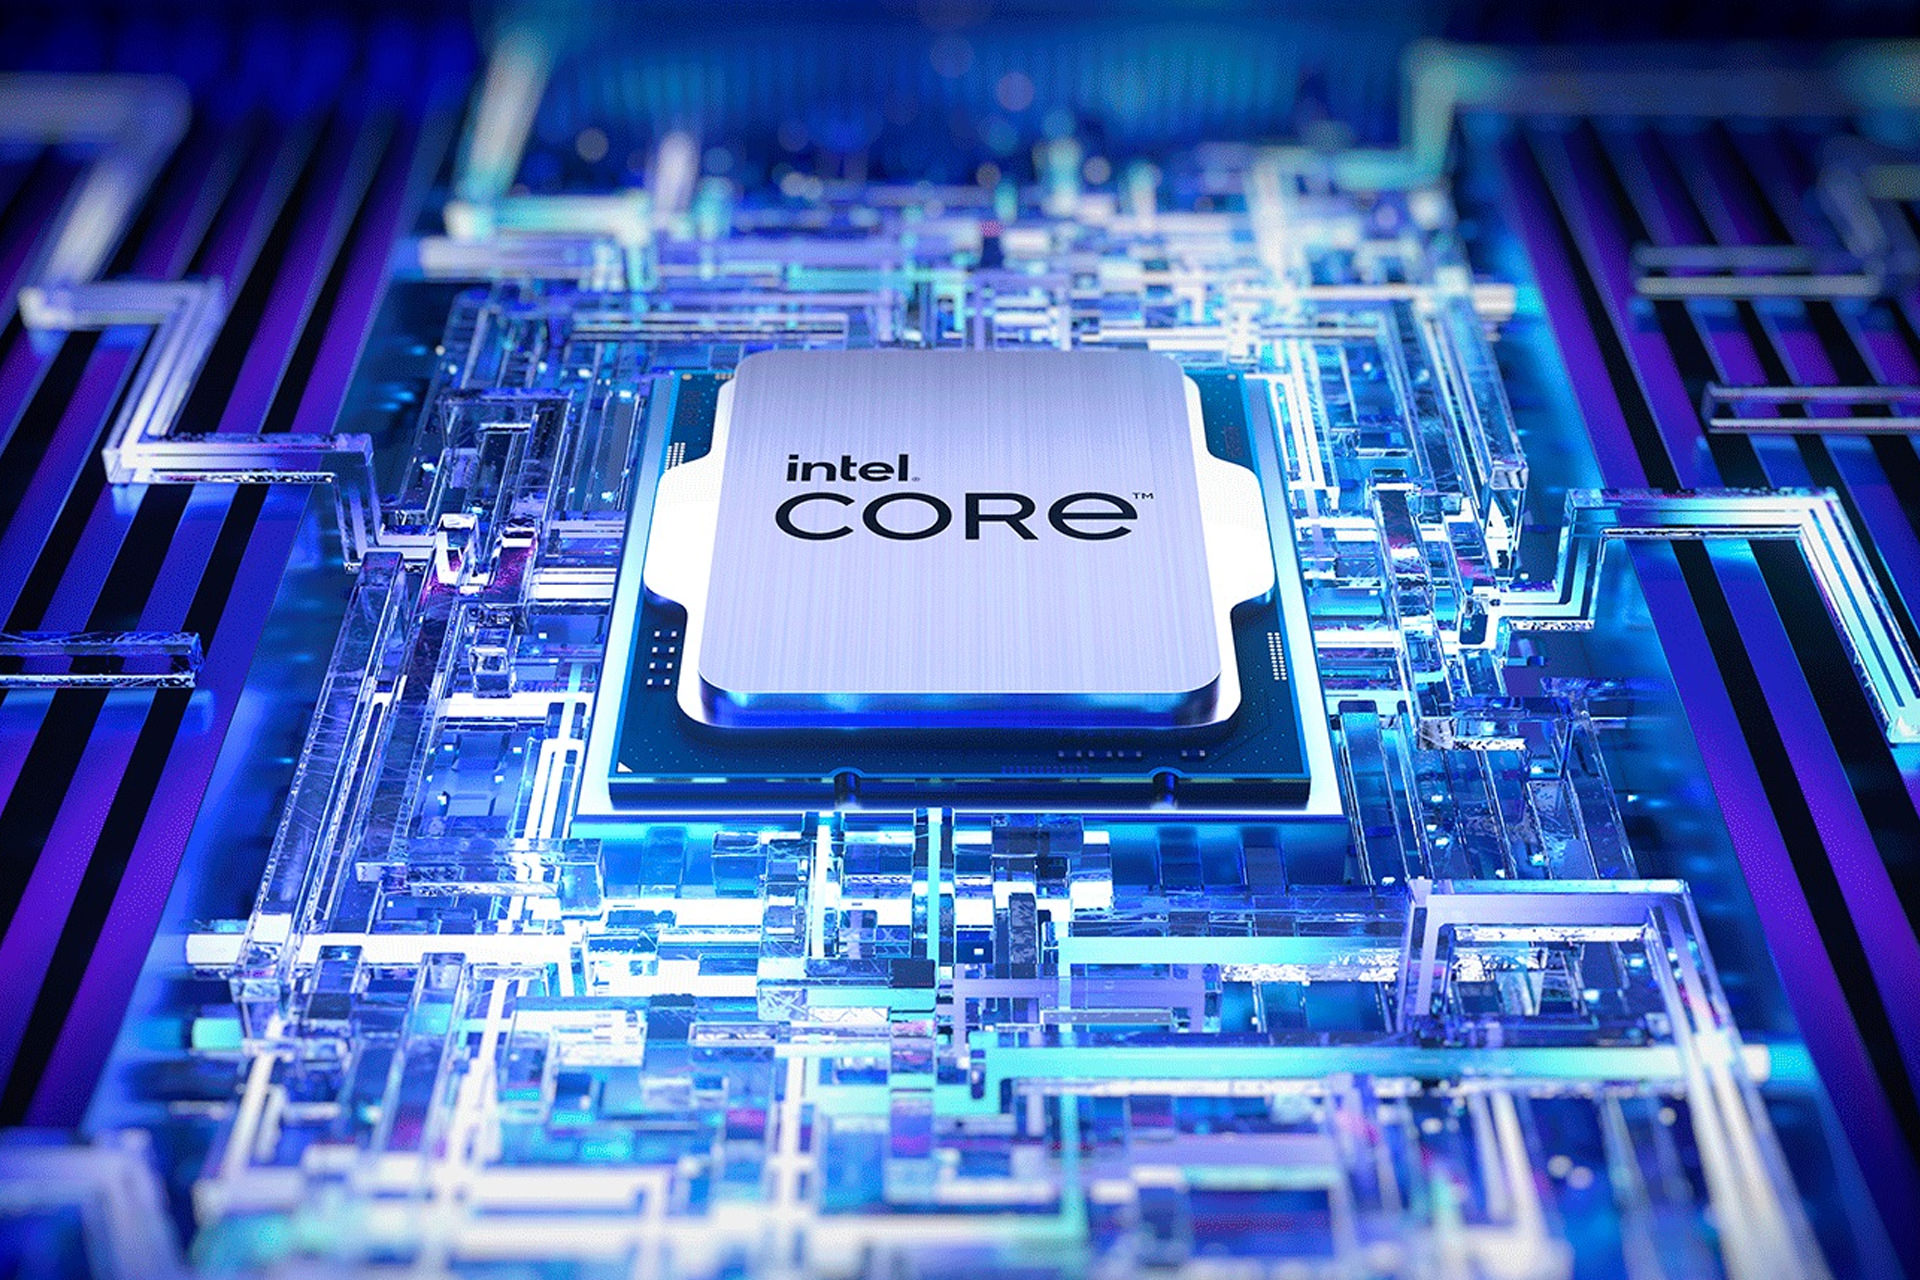 ۸٫۸۱ گیگاهرتز؛ رکورد بالاترین فرکانس پردازنده توسط Intel 13900K شکسته شد